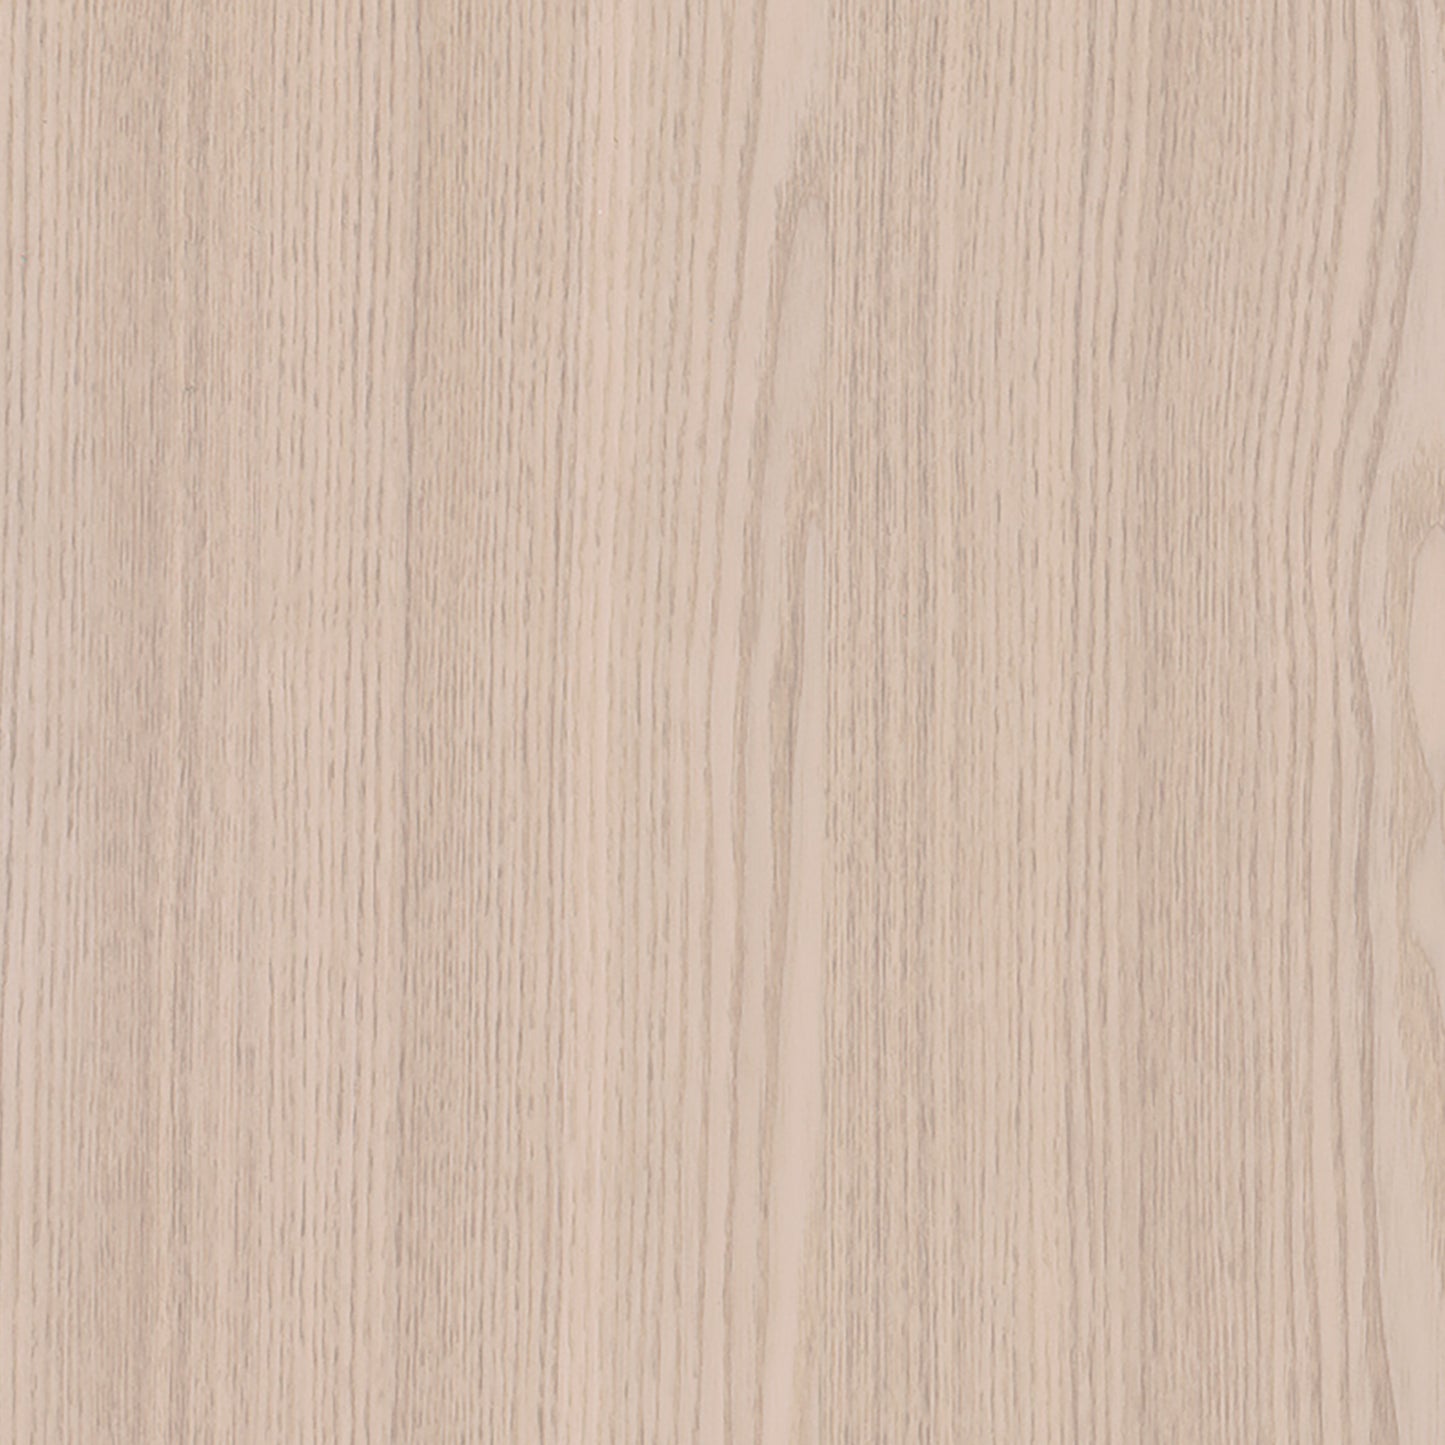 Cover Styl Wood Range - I9 - Soft Pale Oak